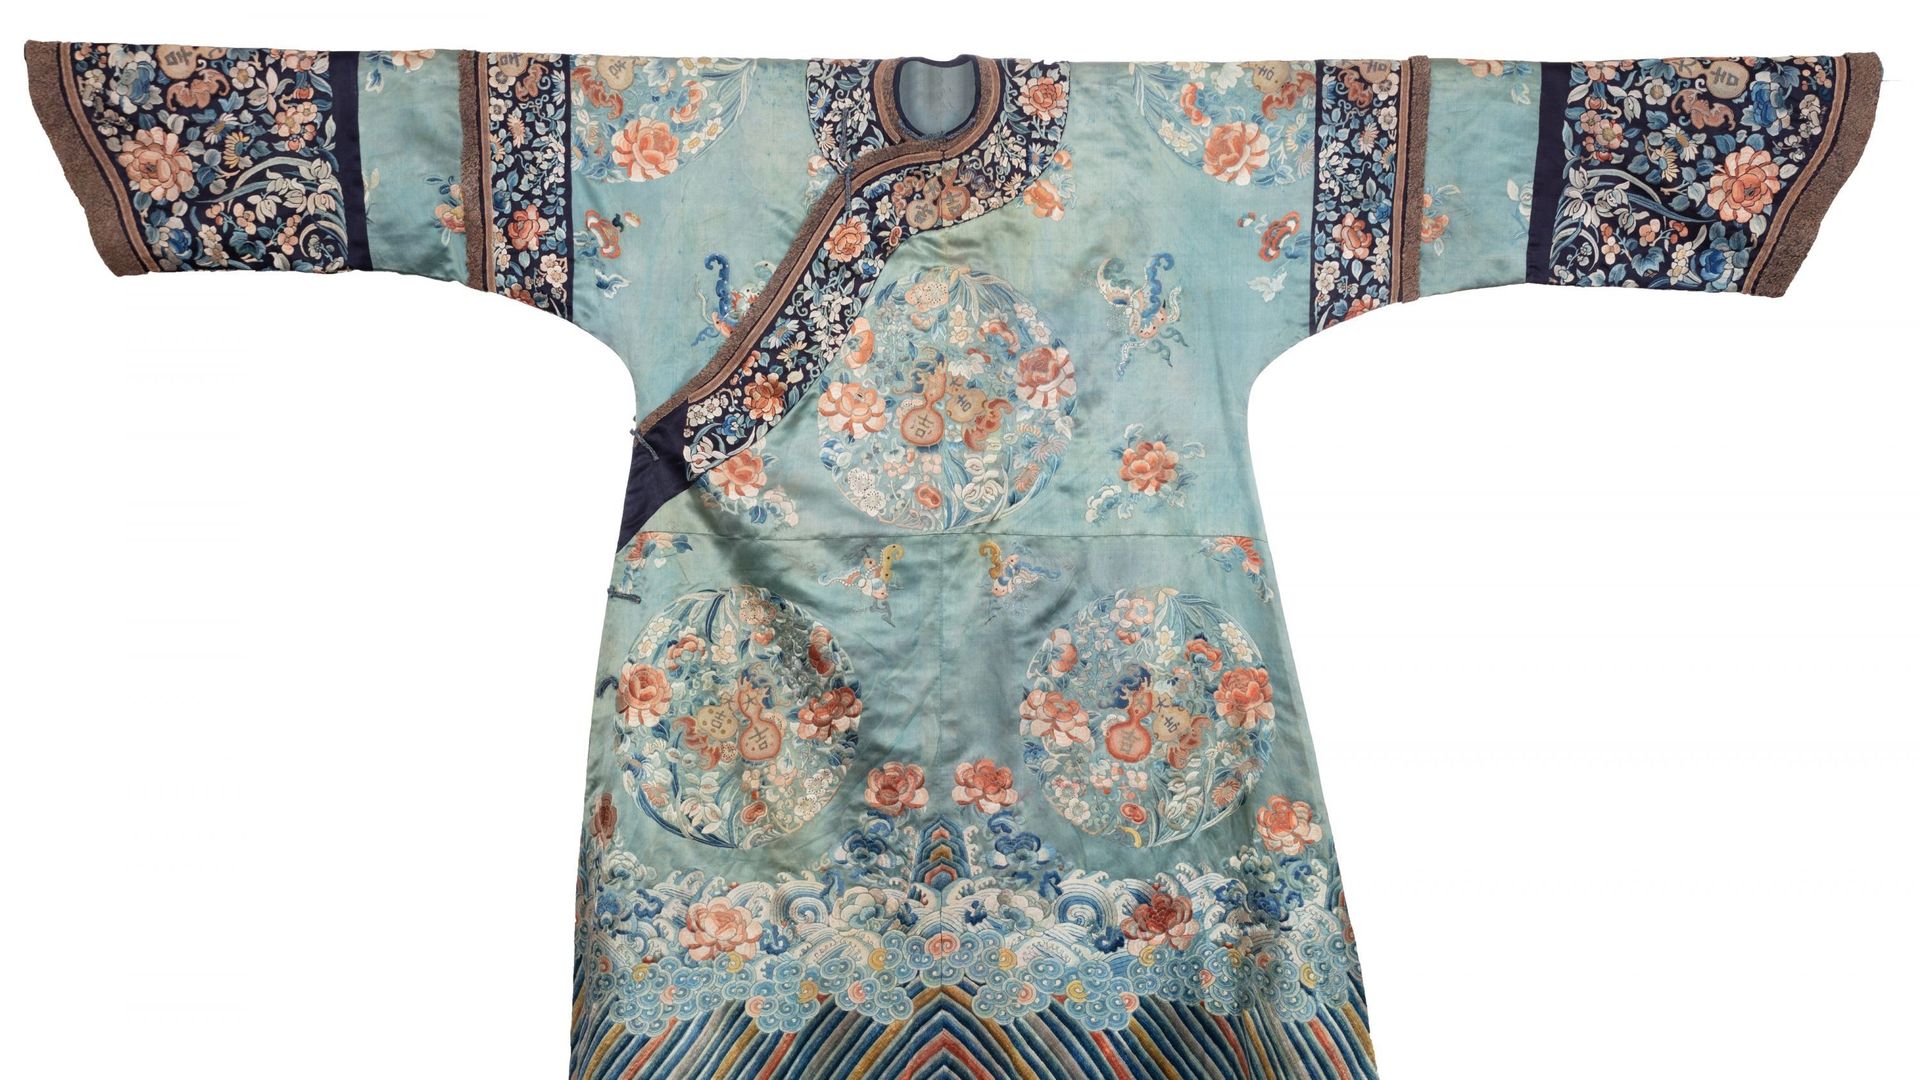 Robe chinoise de femme datant de la fin du 19ème siècle.